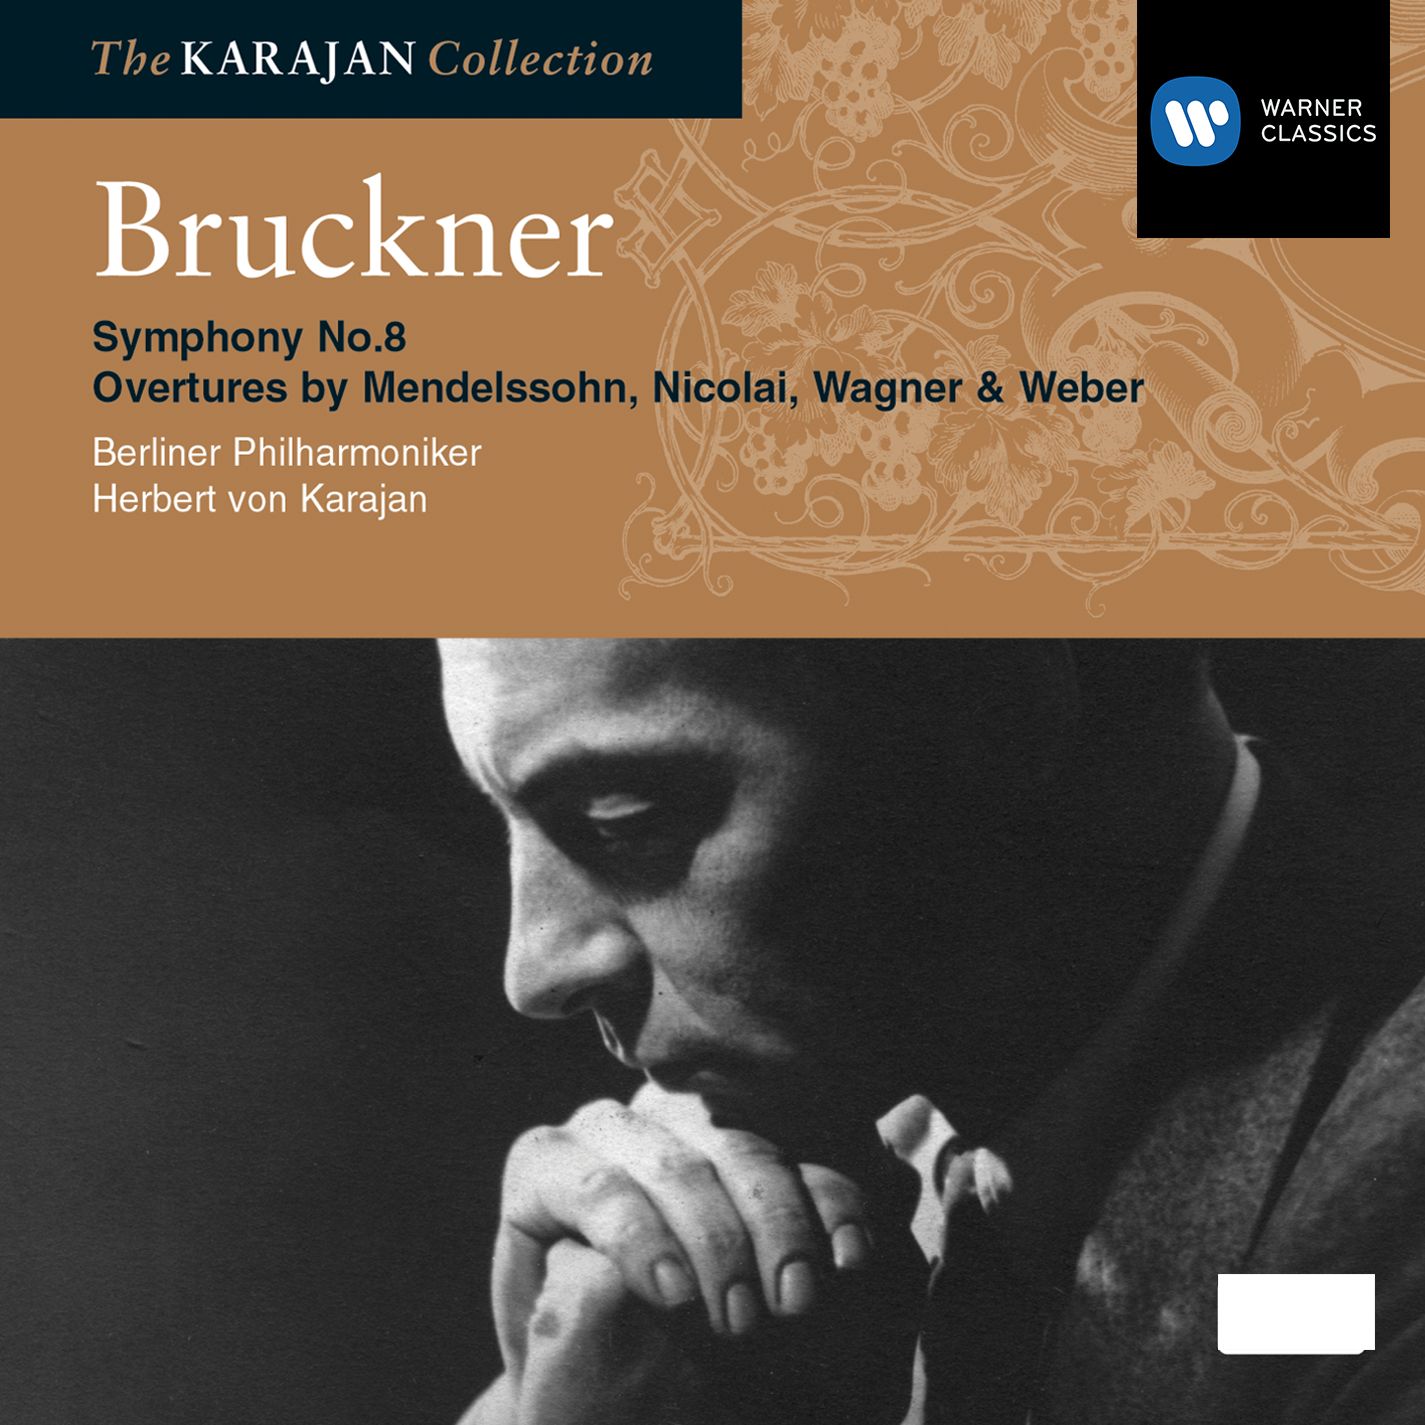 Bruckner: Symphony No.8 - Overtures by Mendelssohn, Nicolai, Wagner & Weber